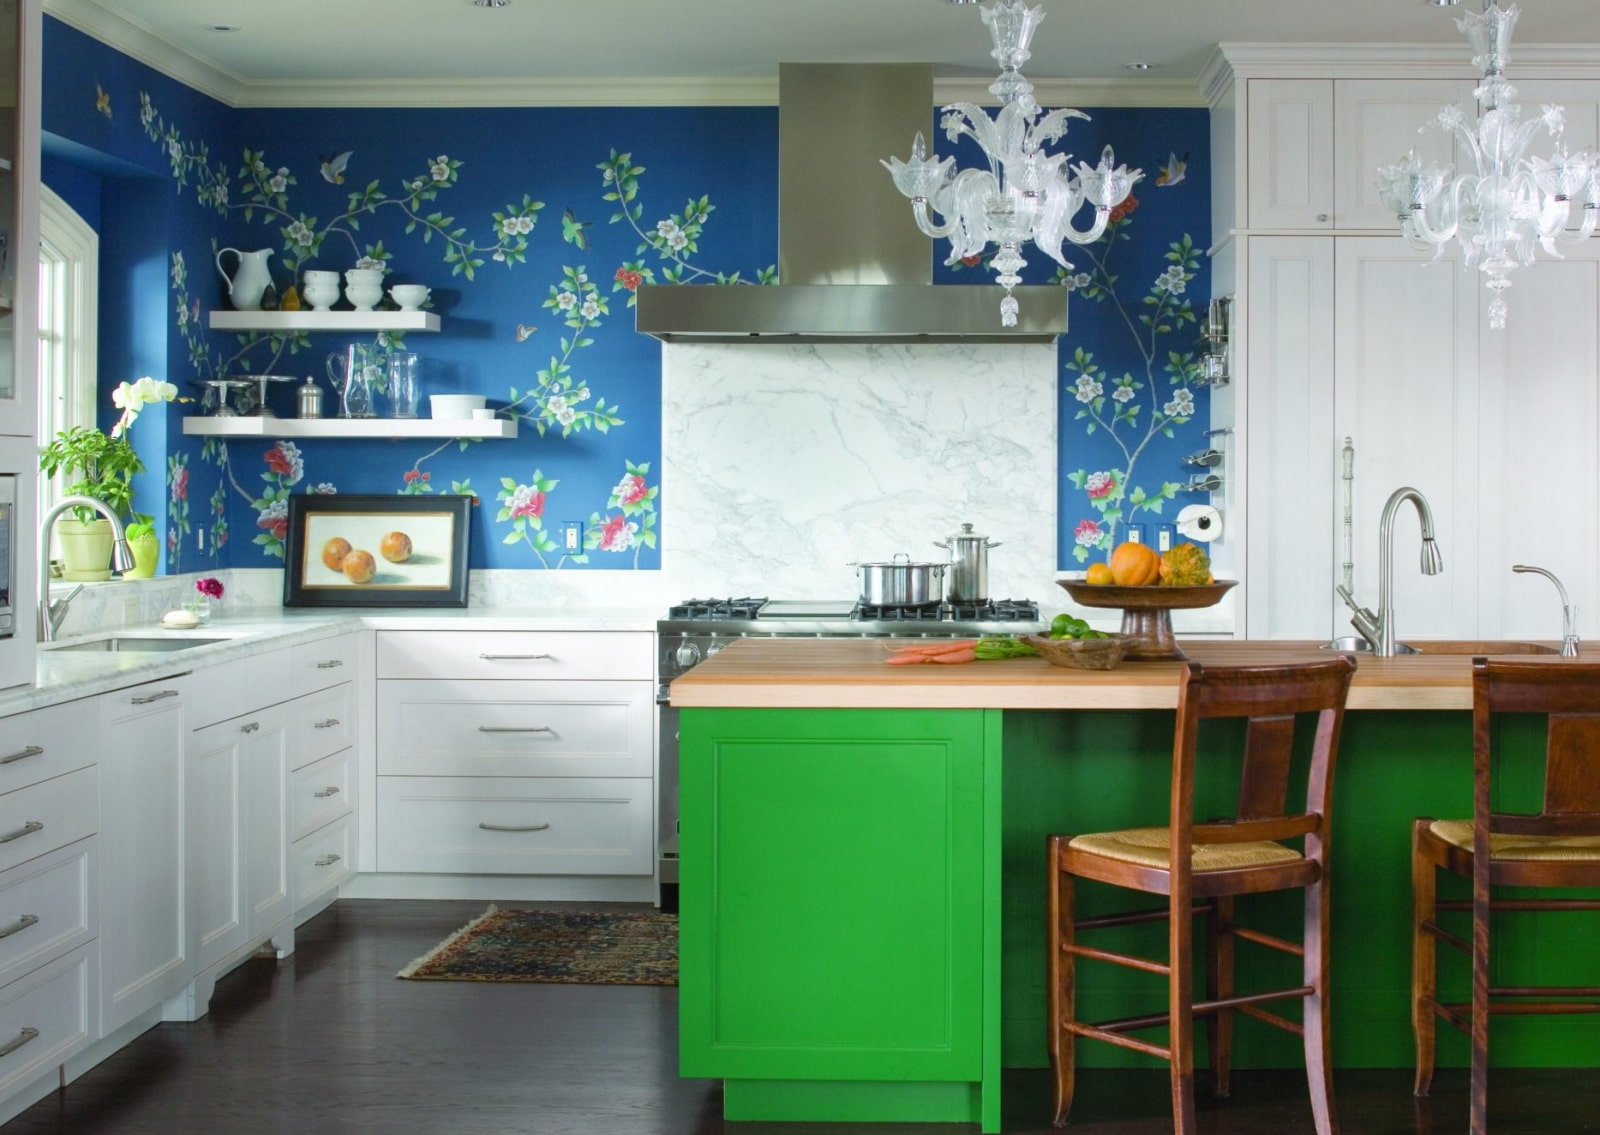 màu sắc của các bức tường trong trang trí ảnh nhà bếp